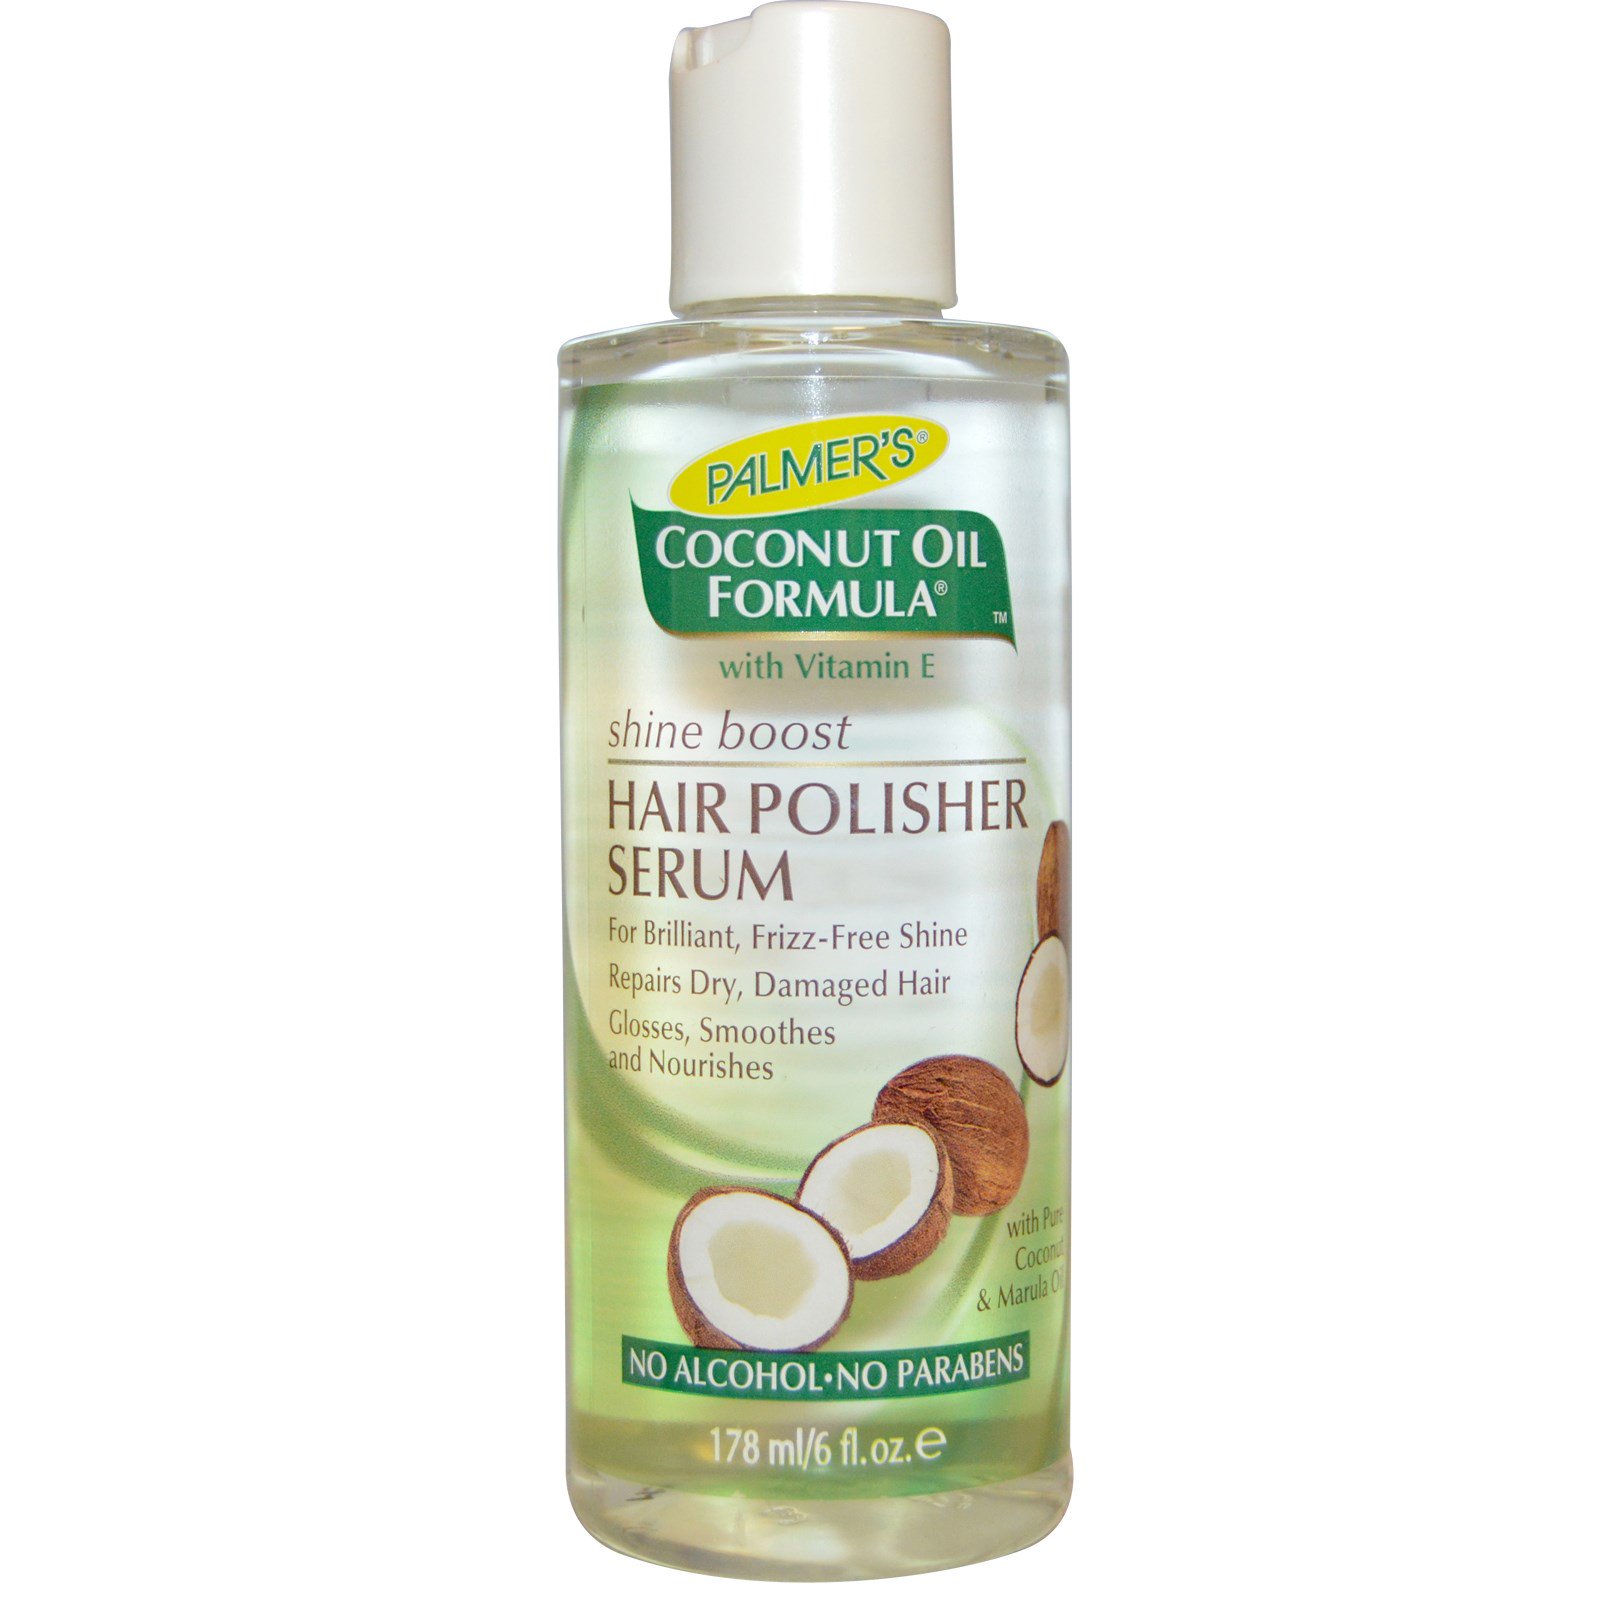 Palmers Coconut Oil Formula Hair Polisher Serum 6 Fl Oz 178